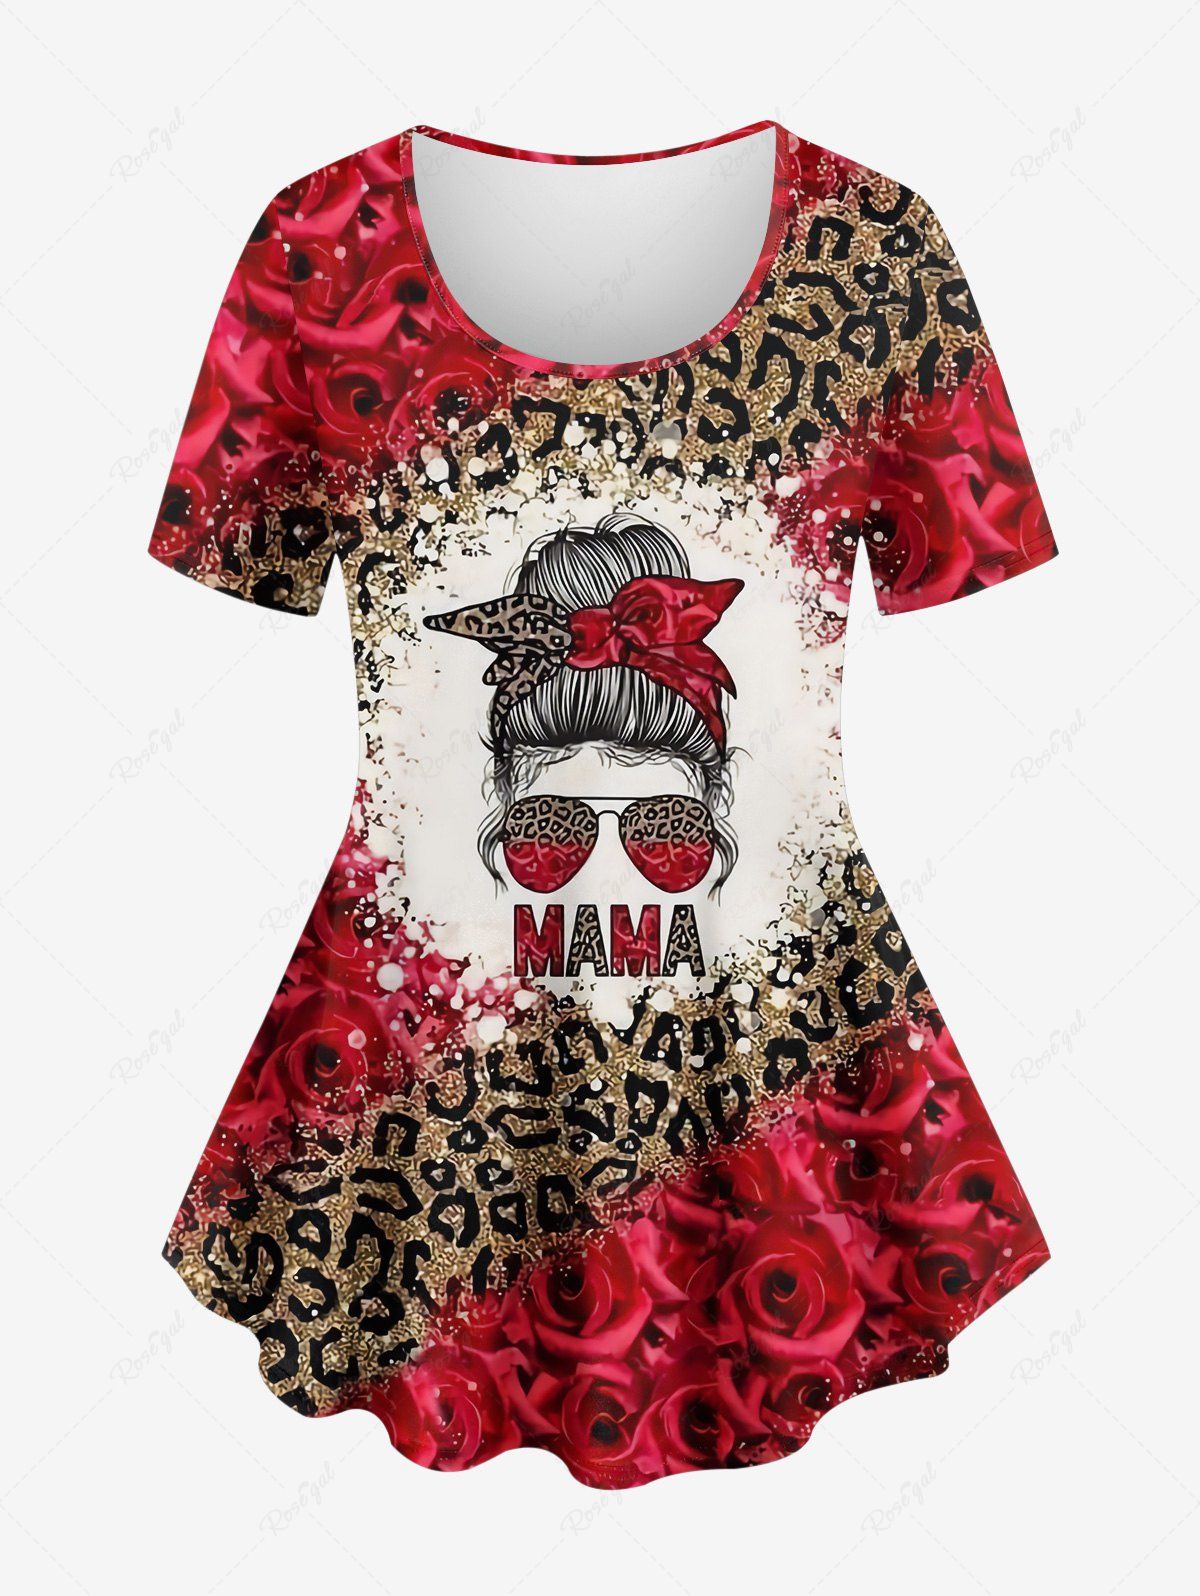 Fashion Plus Size Leopard Rose Flower Girl Bowknot Sunglasses Sparkling Sequin 3D Print T-shirt  